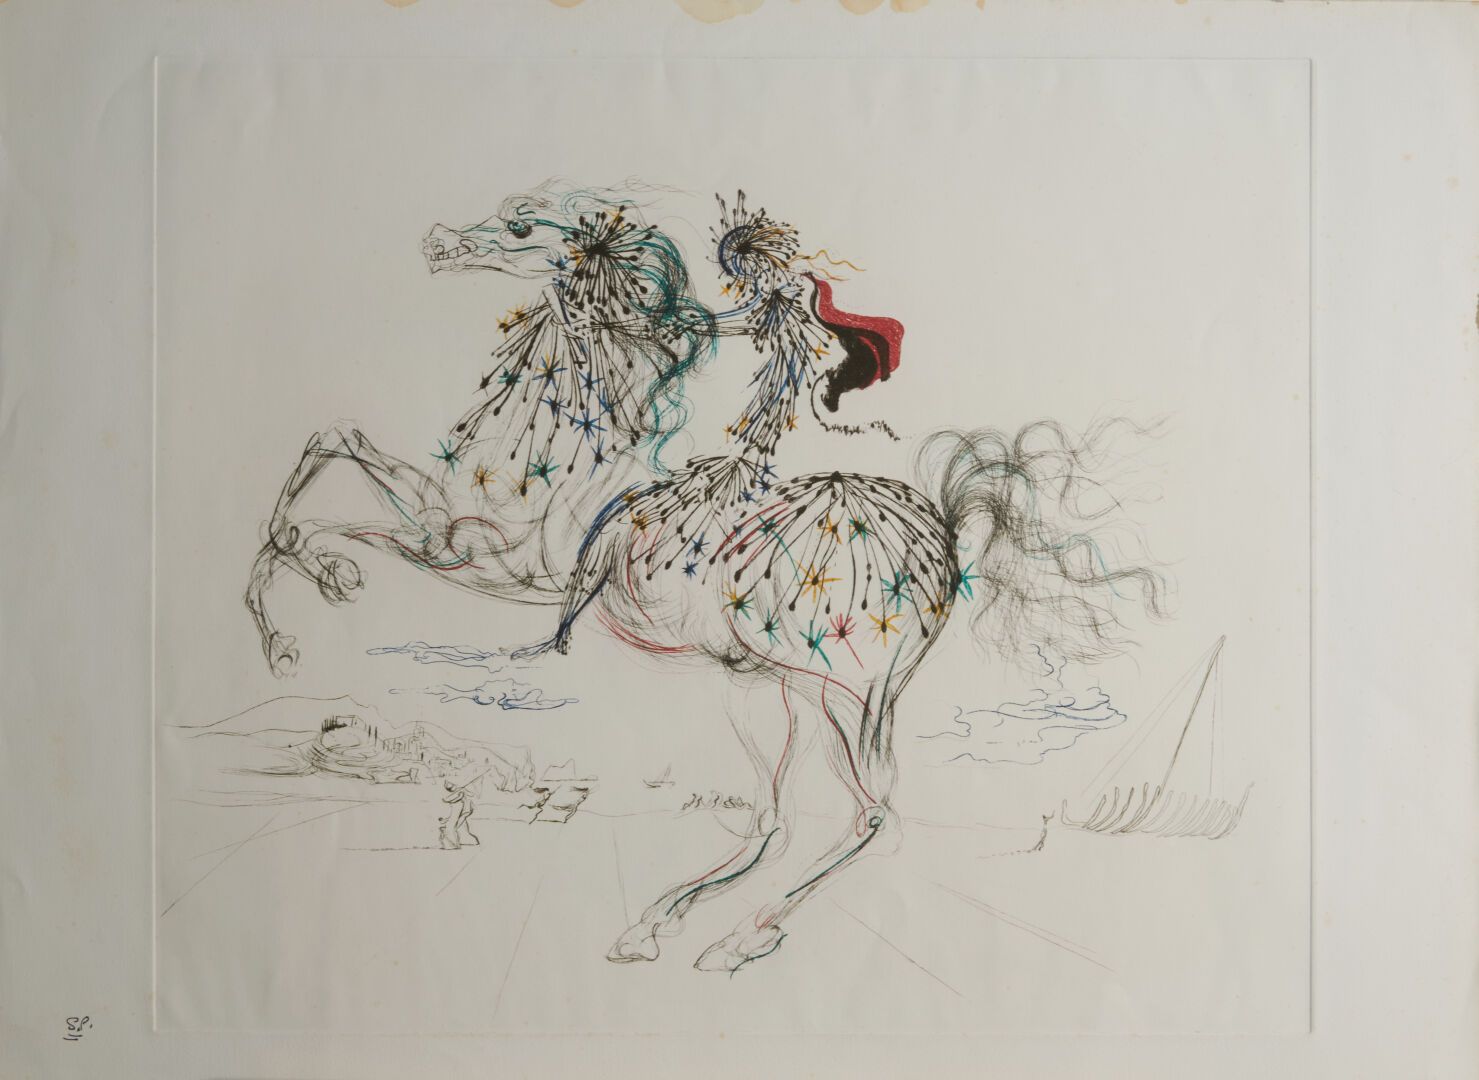 Null DALI Salvador (1904-1989)

"The rider" print - 49x59